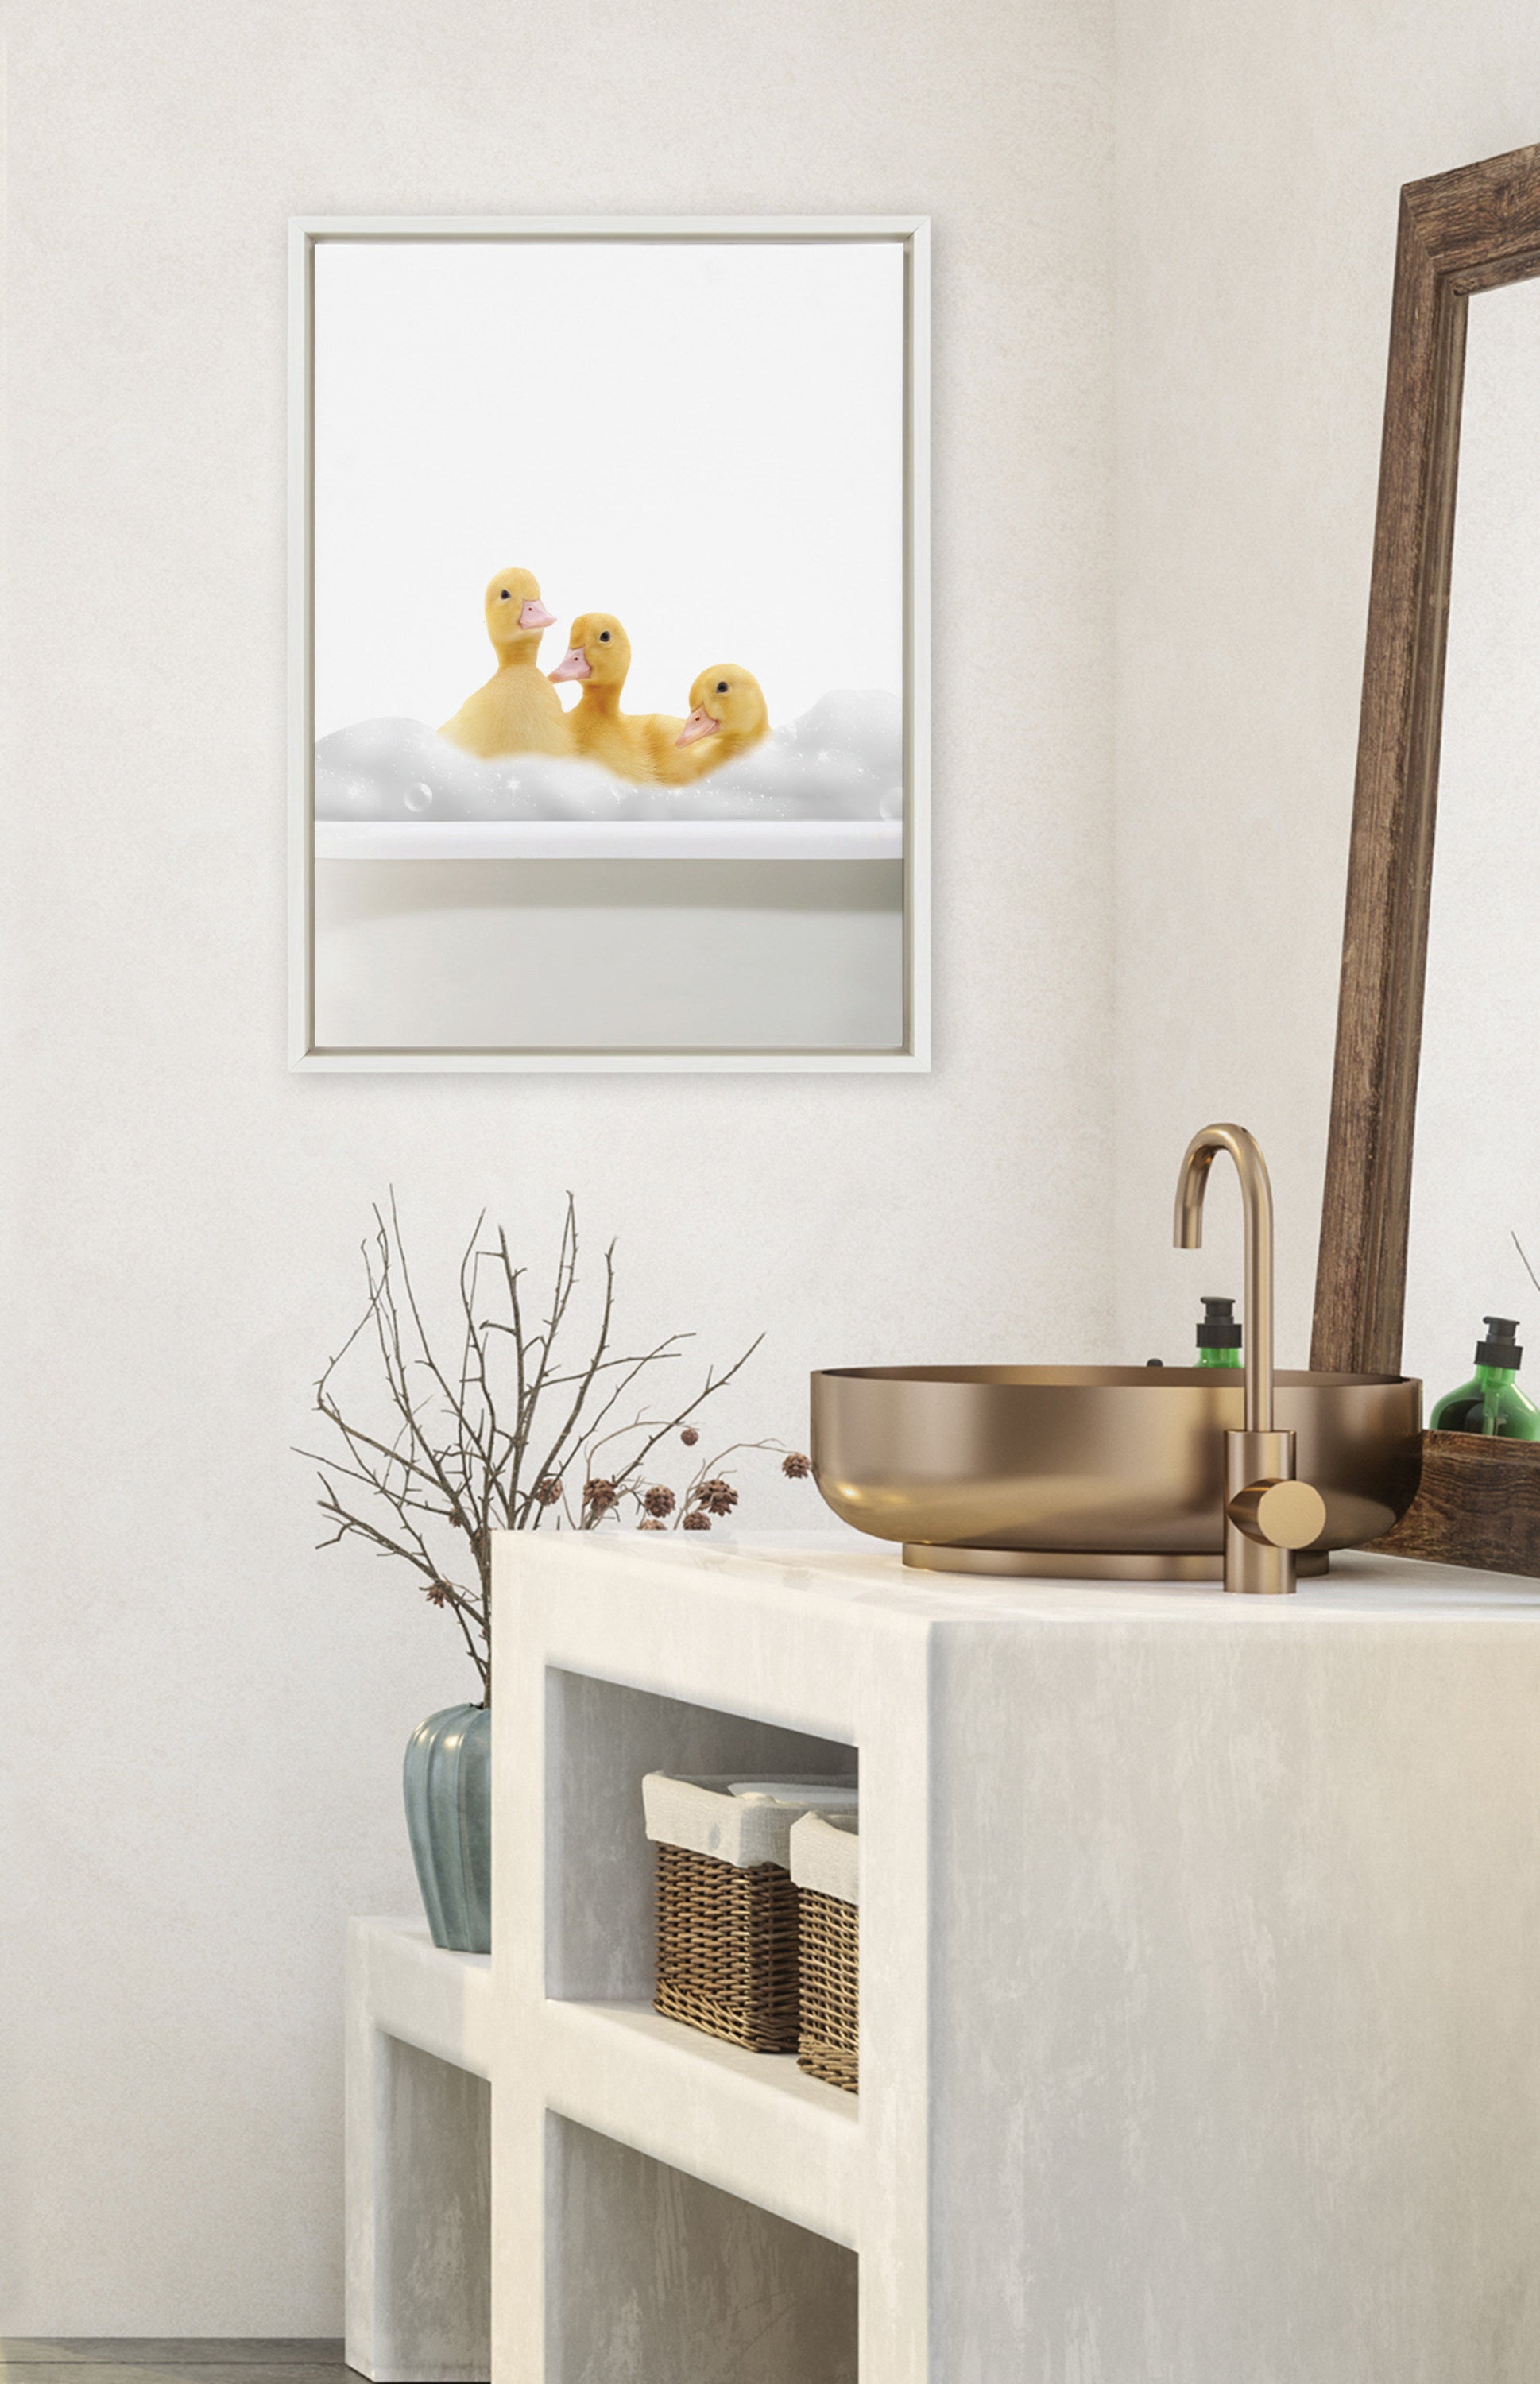 Sylvie Bathroom Bubble Bath 3 Ducks Framed Canvas by The Creative Bunch Studio